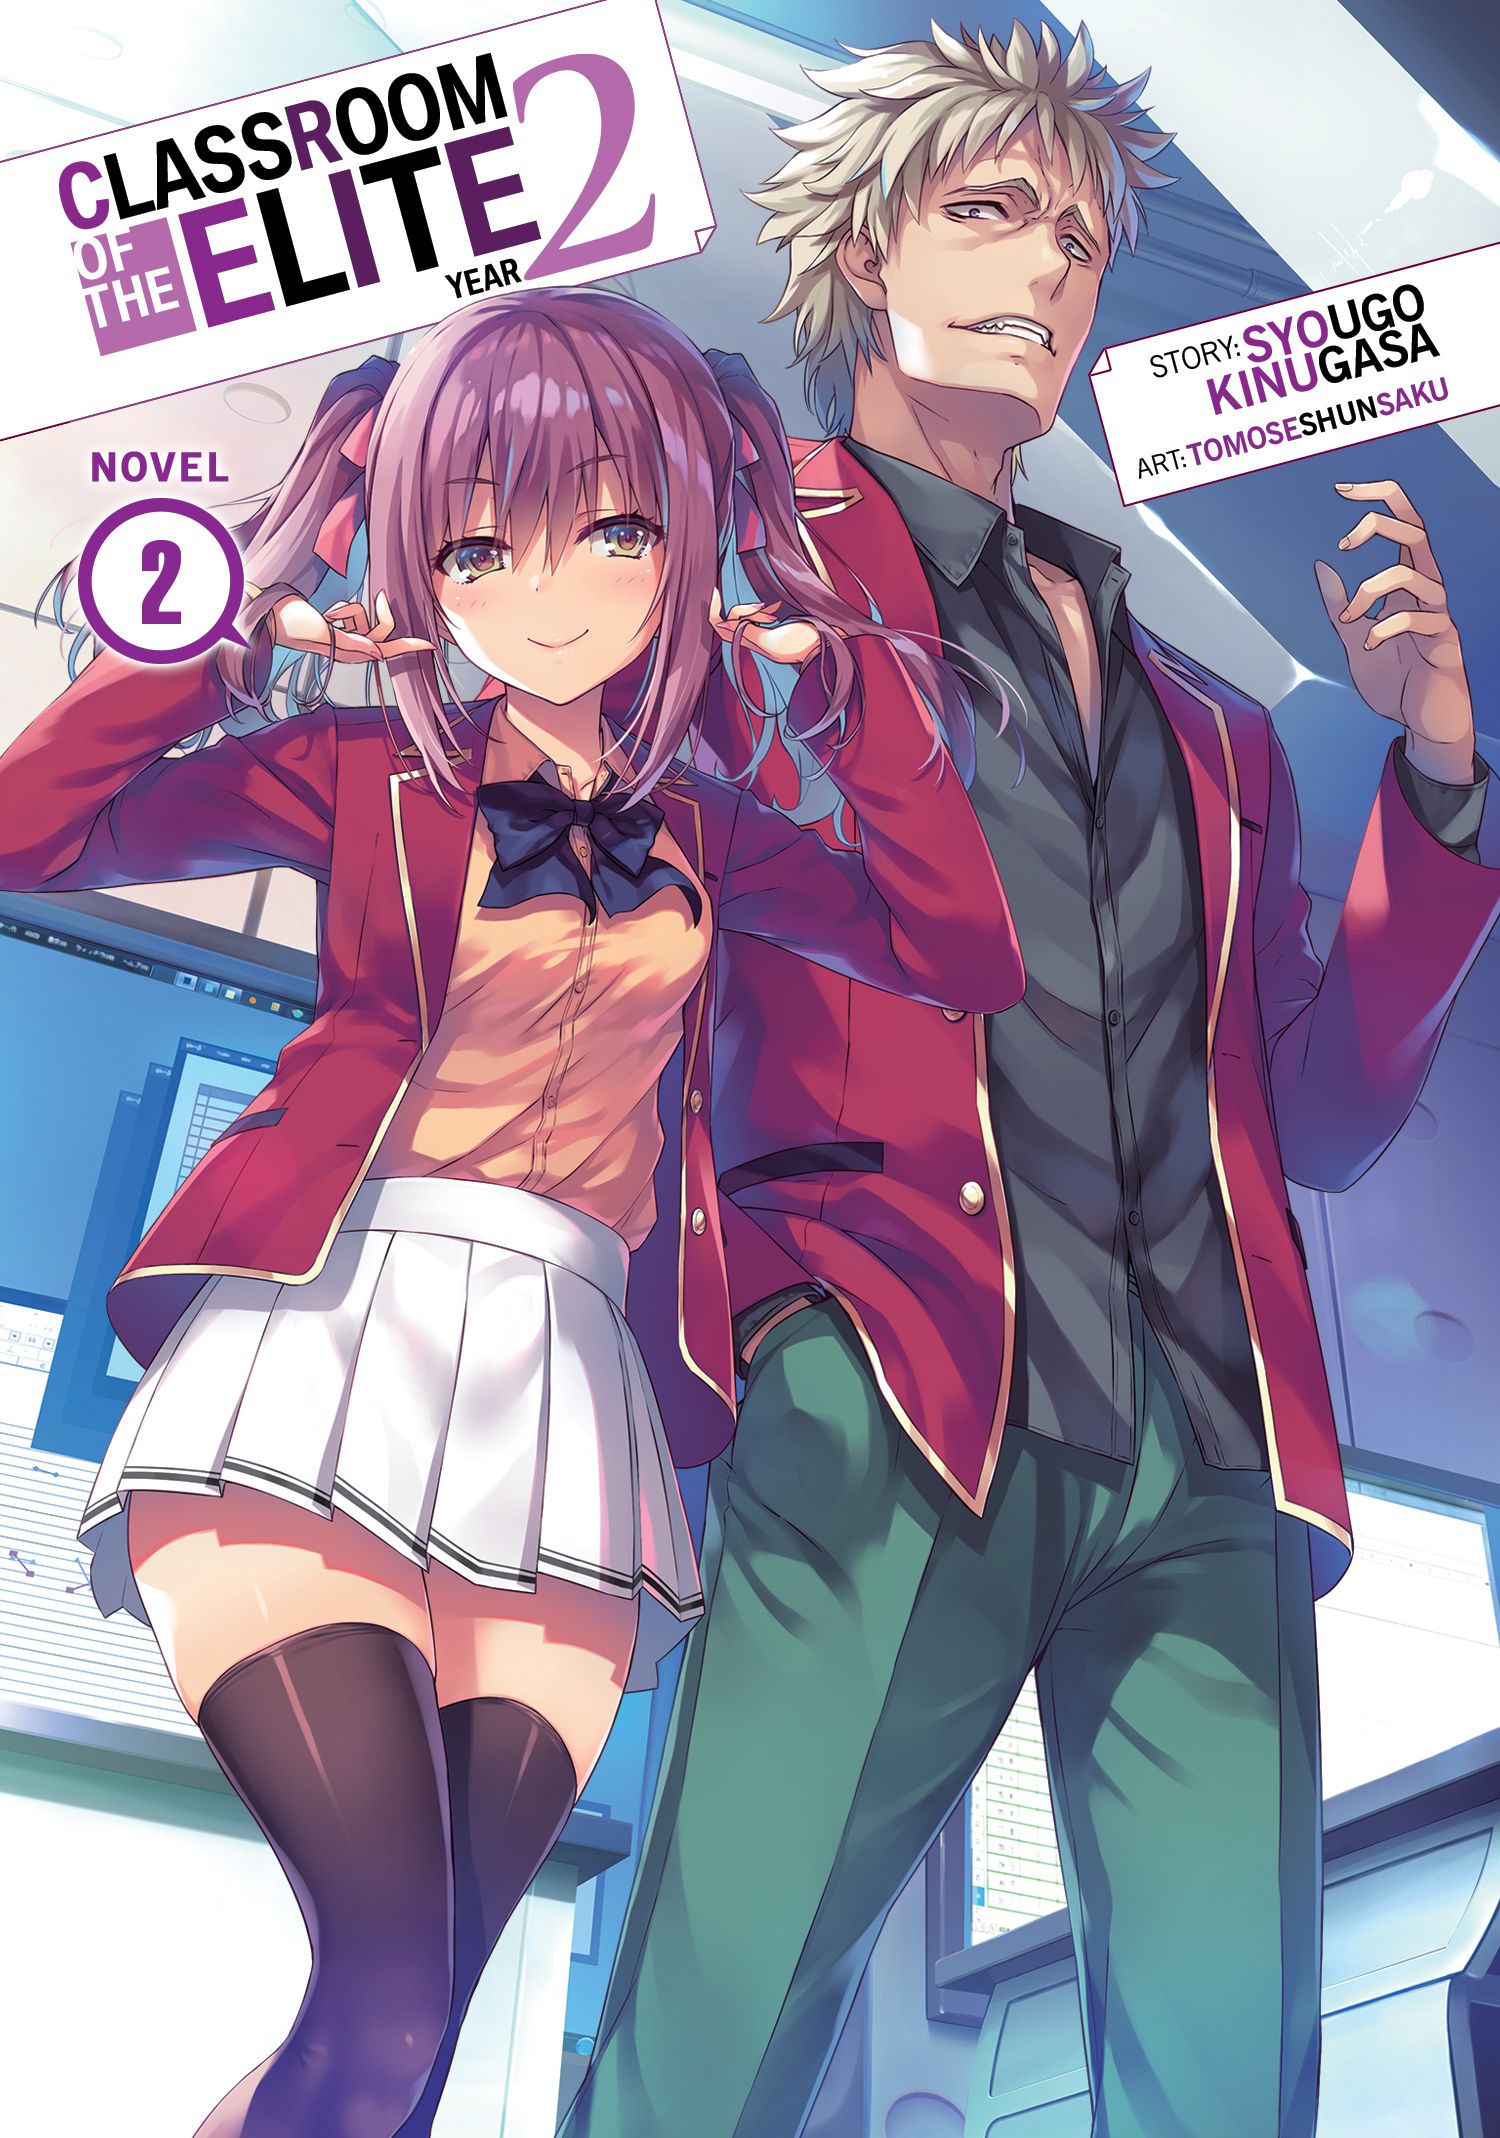 Manga Mogura RE on X: Classroom of the Elite - 2nd Year manga adaptation  Vol.2 by Shougo Kinugasa, Tomose Shunsaku, Shia Sasane (Youkoso Jitsuryoku  Shijou Shugi no Kyoushitsu e: 2-Nensei-hen)  /